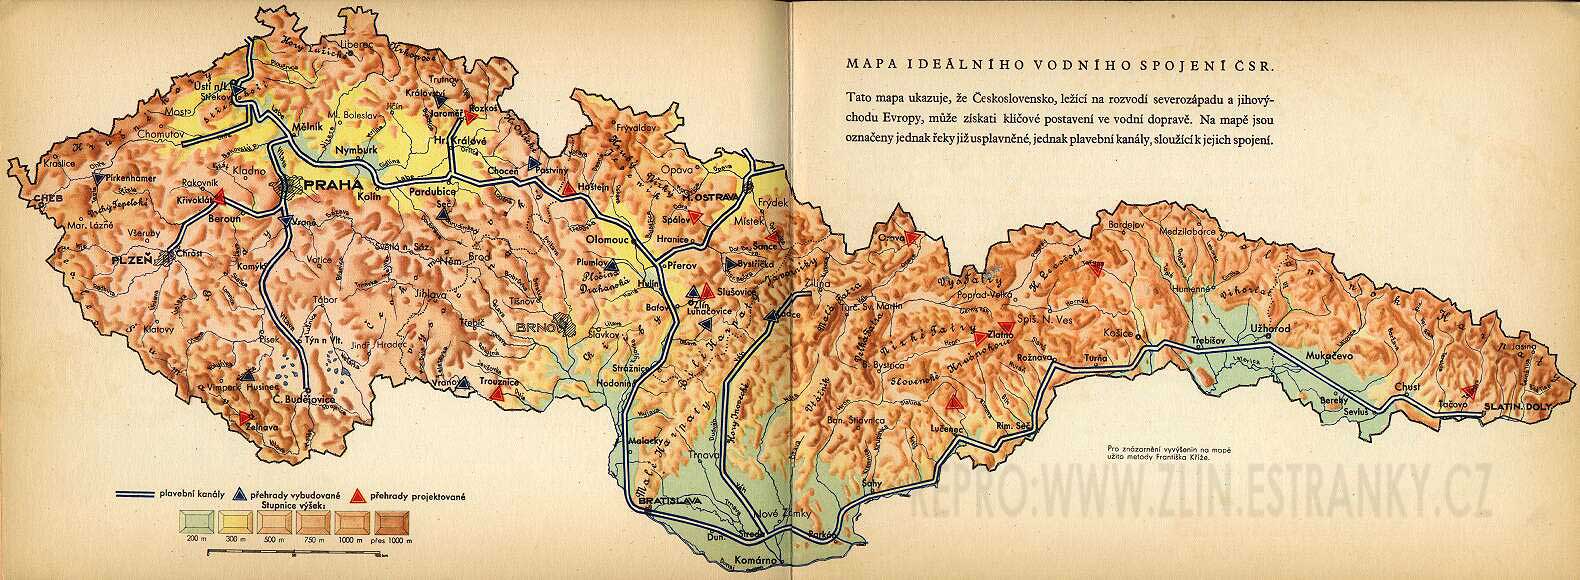 Mapa - vodní spojení v ČSR